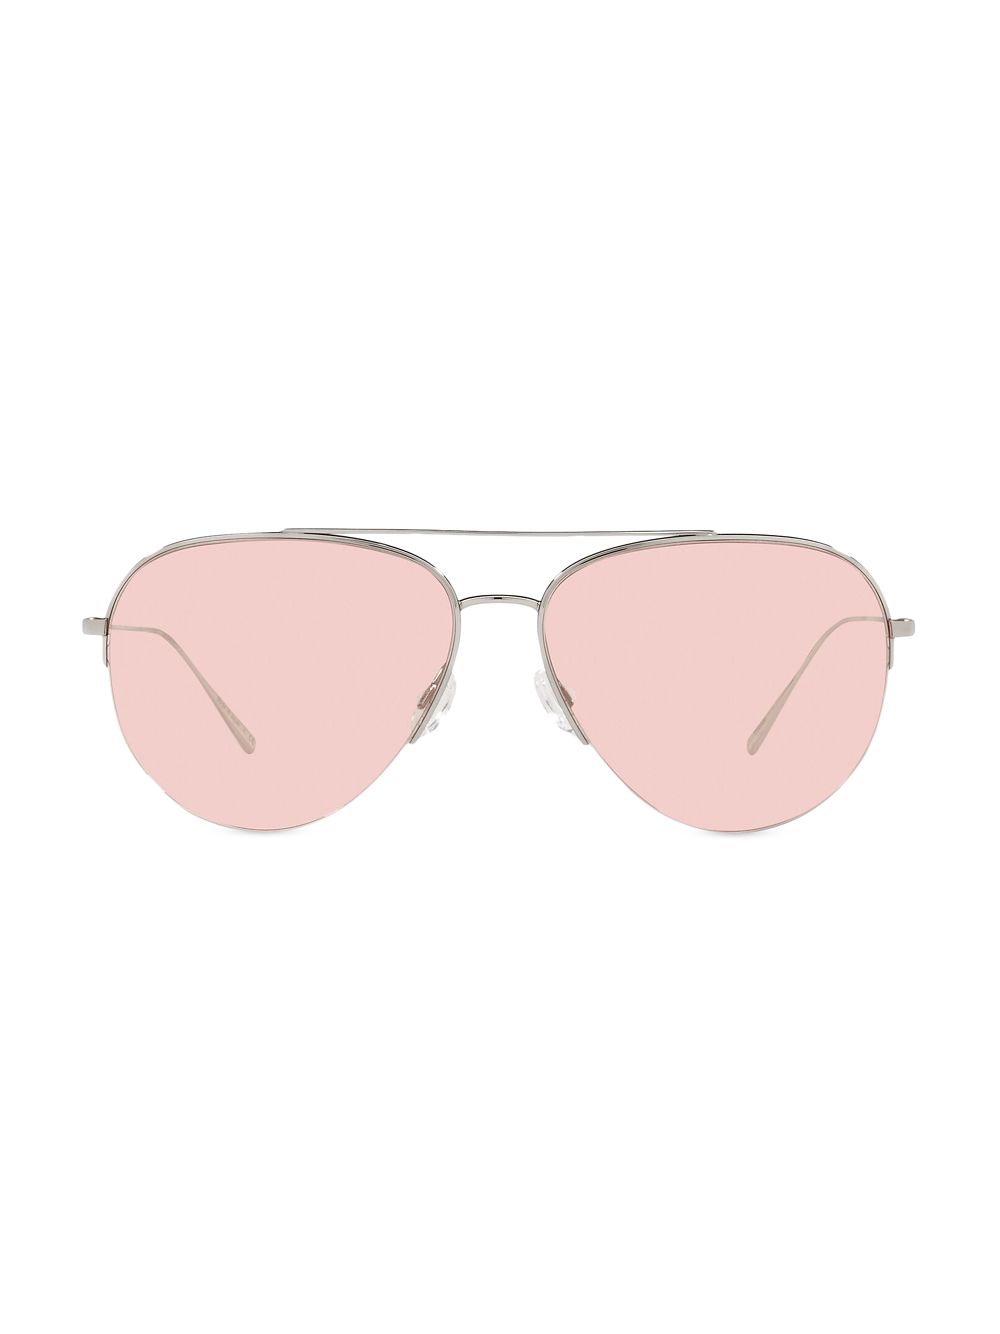 Солнцезащитные очки-авиаторы Cleamons 60 мм Oliver Peoples, серебряный